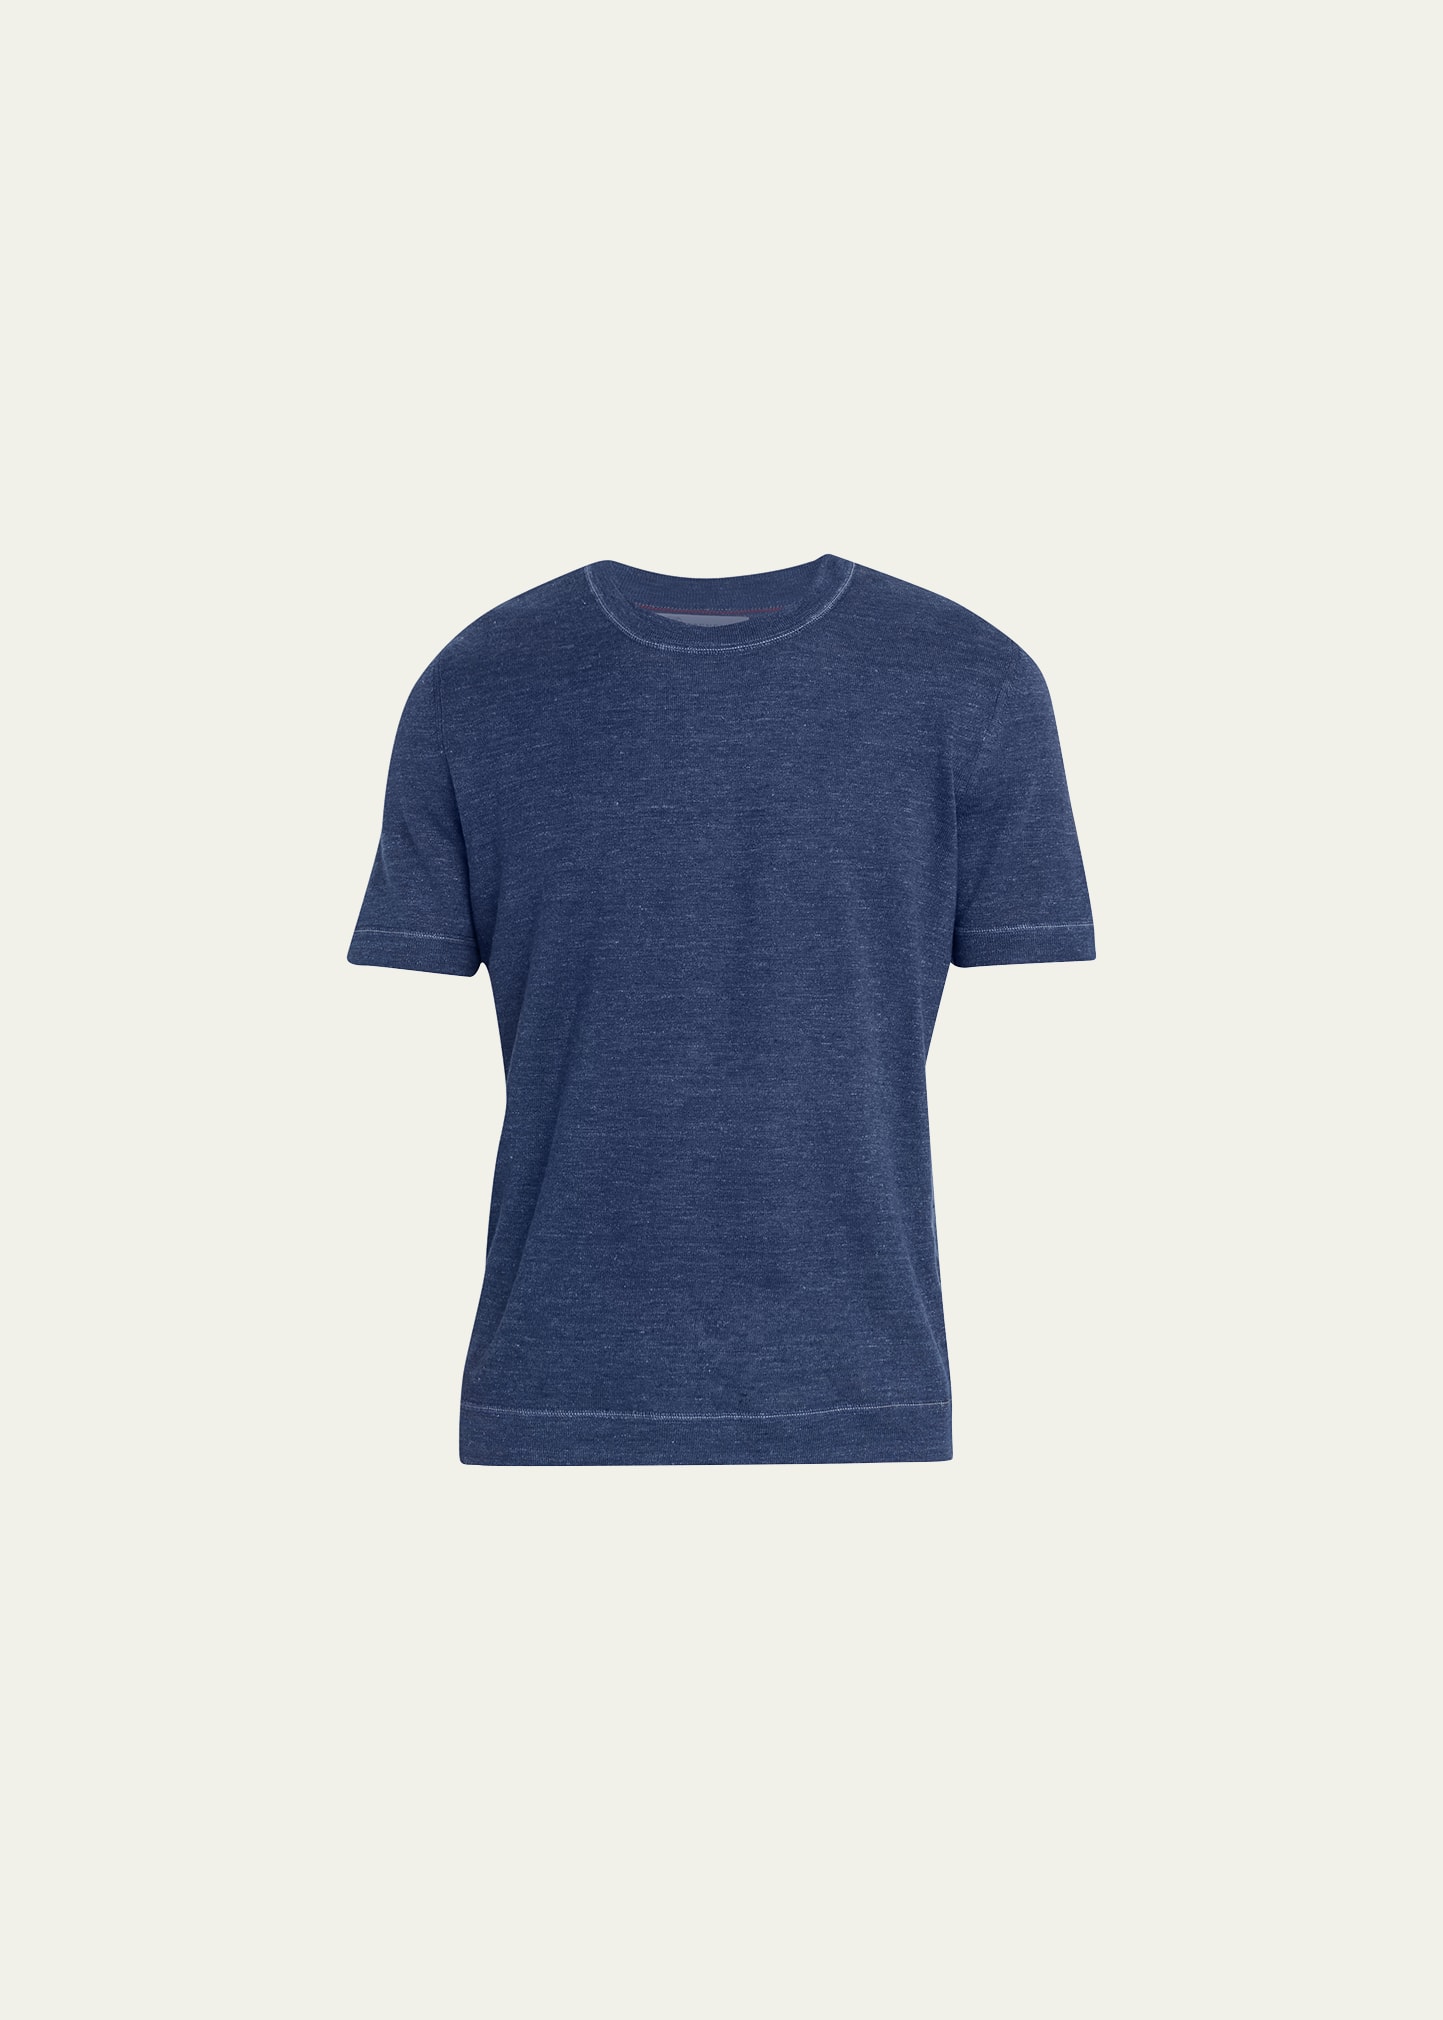 Brunello Cucinelli Men's Cotton-linen Crewneck T-shirt In Cq607 Dark Blue